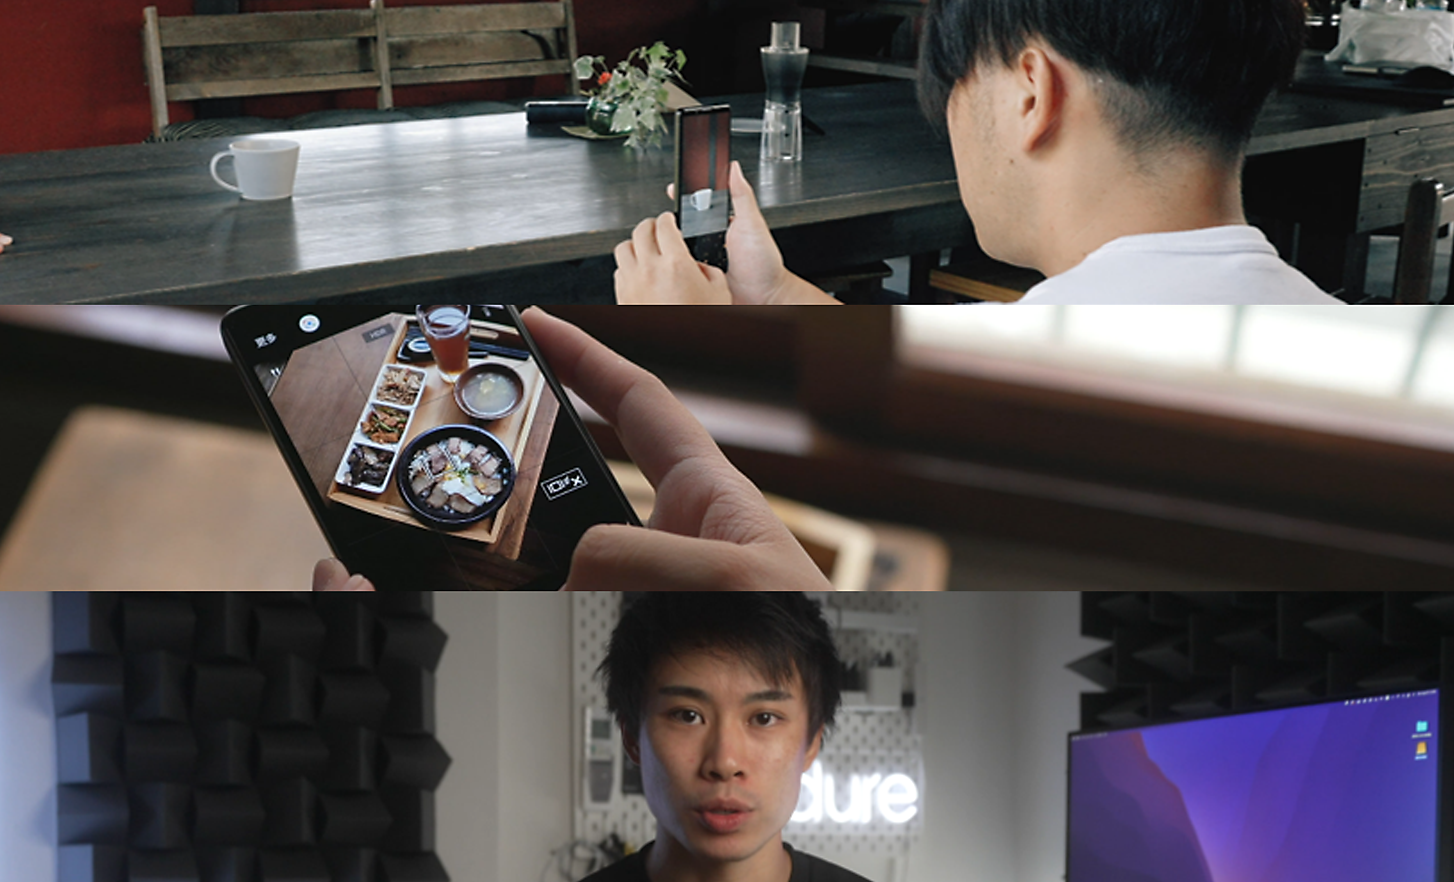 Három kép: egy férfi fotóz egy Xperia készülékkel, valaki egy képet szemlél egy Xperia készüléken, illetve egy férfi, aki közvetlenül a kamerába néz